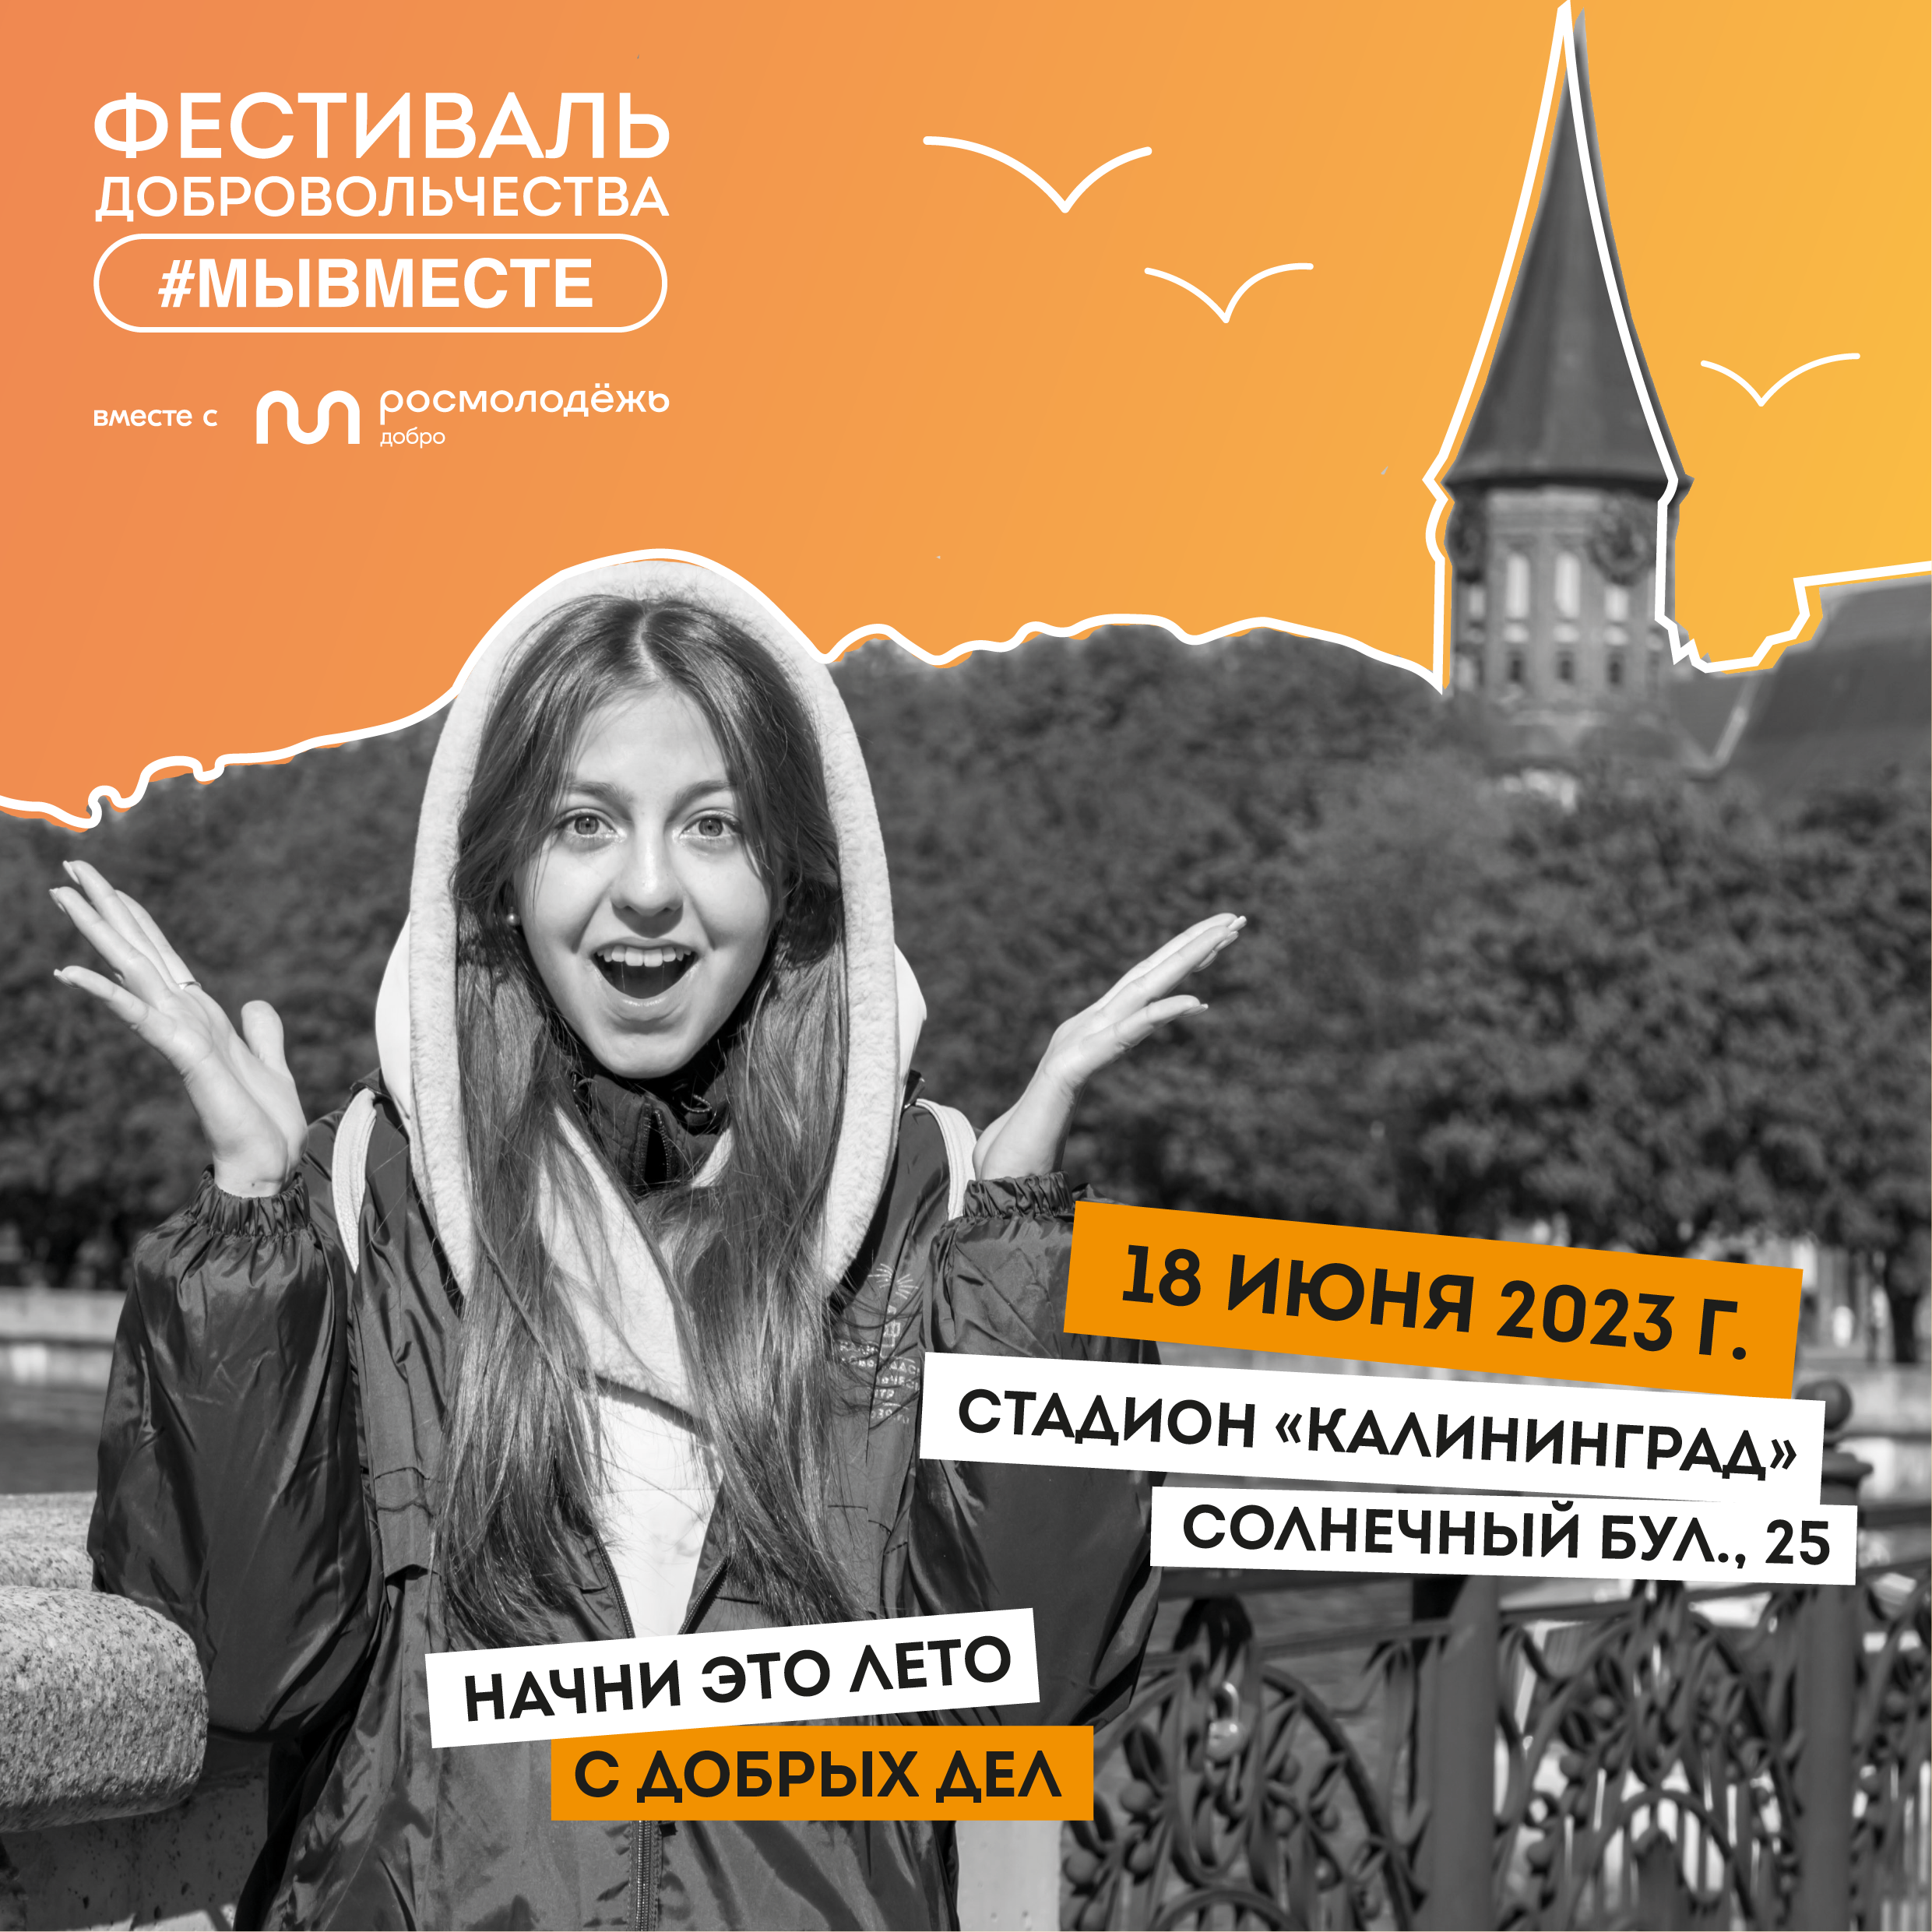 Делать добрые дела просто: в начале лета в Калининграде пройдёт Фестиваль добровольчества #МЫВМЕСТЕ